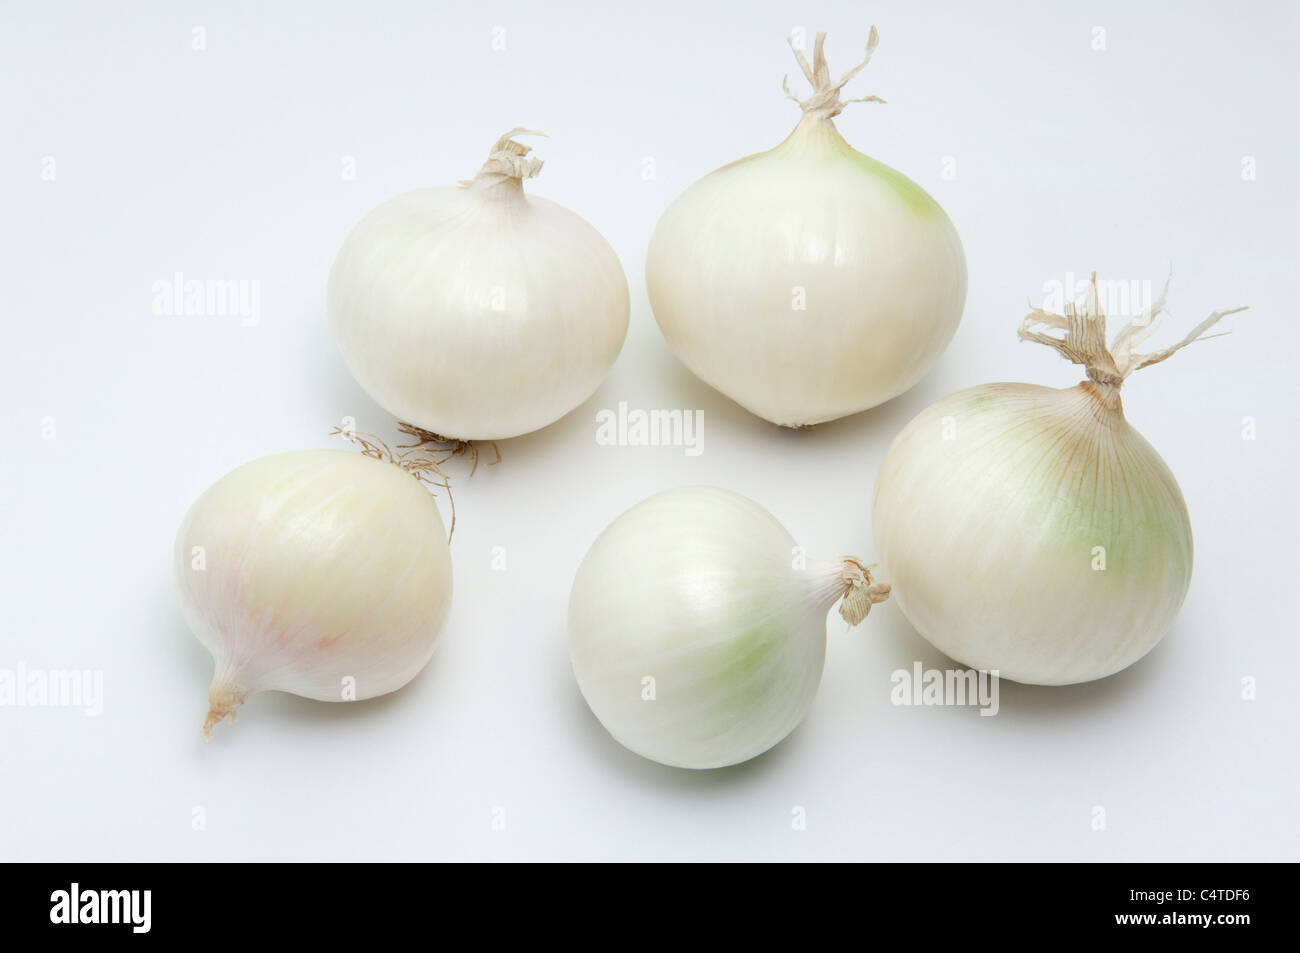 Giardino Cipolla (Allium cepa). 5 cipolle bianche. Studio Immagine contro uno sfondo bianco. Foto Stock